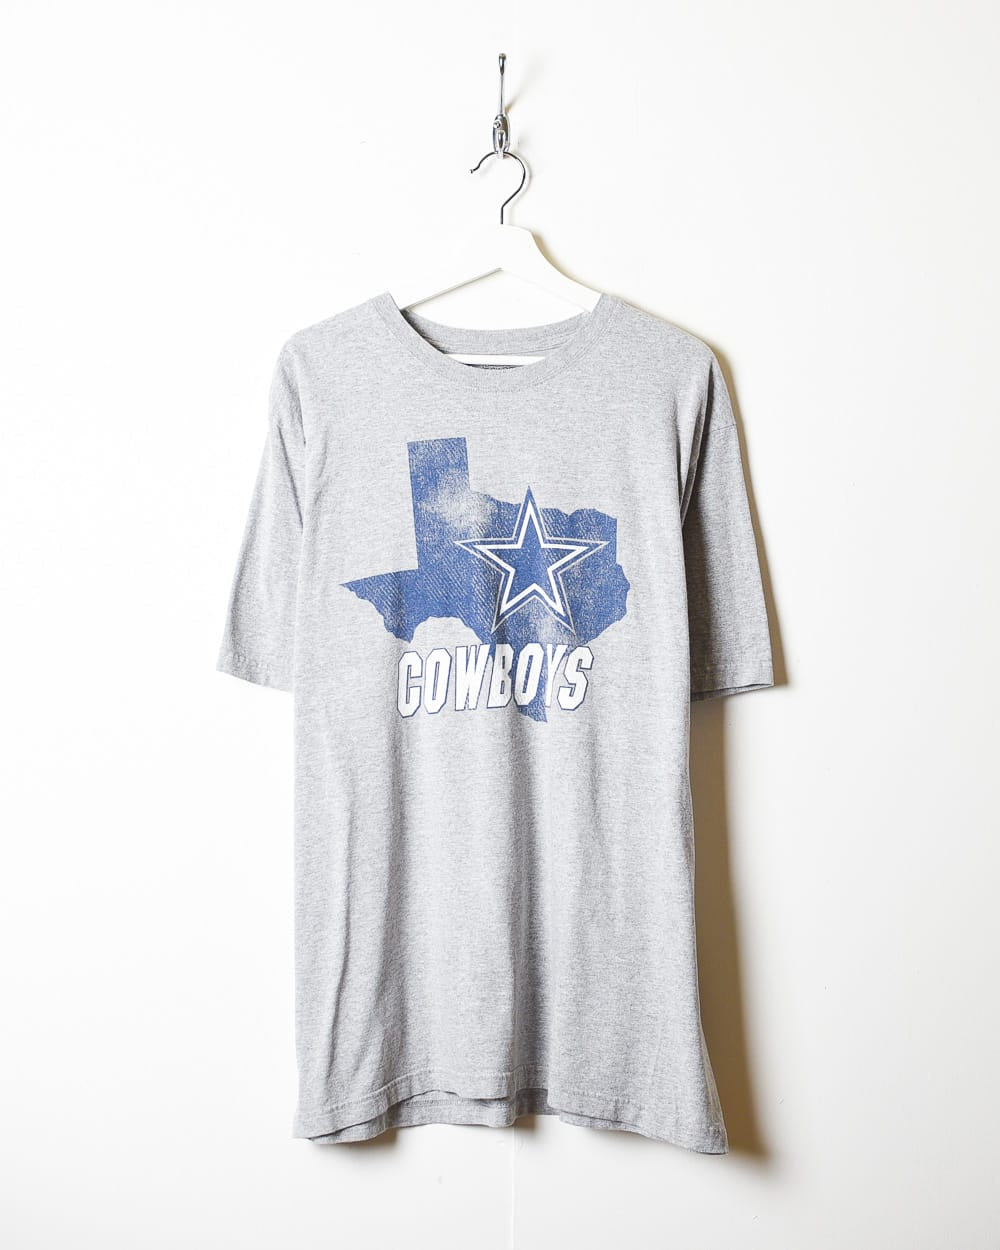 Dallas Cowboys tee shirts